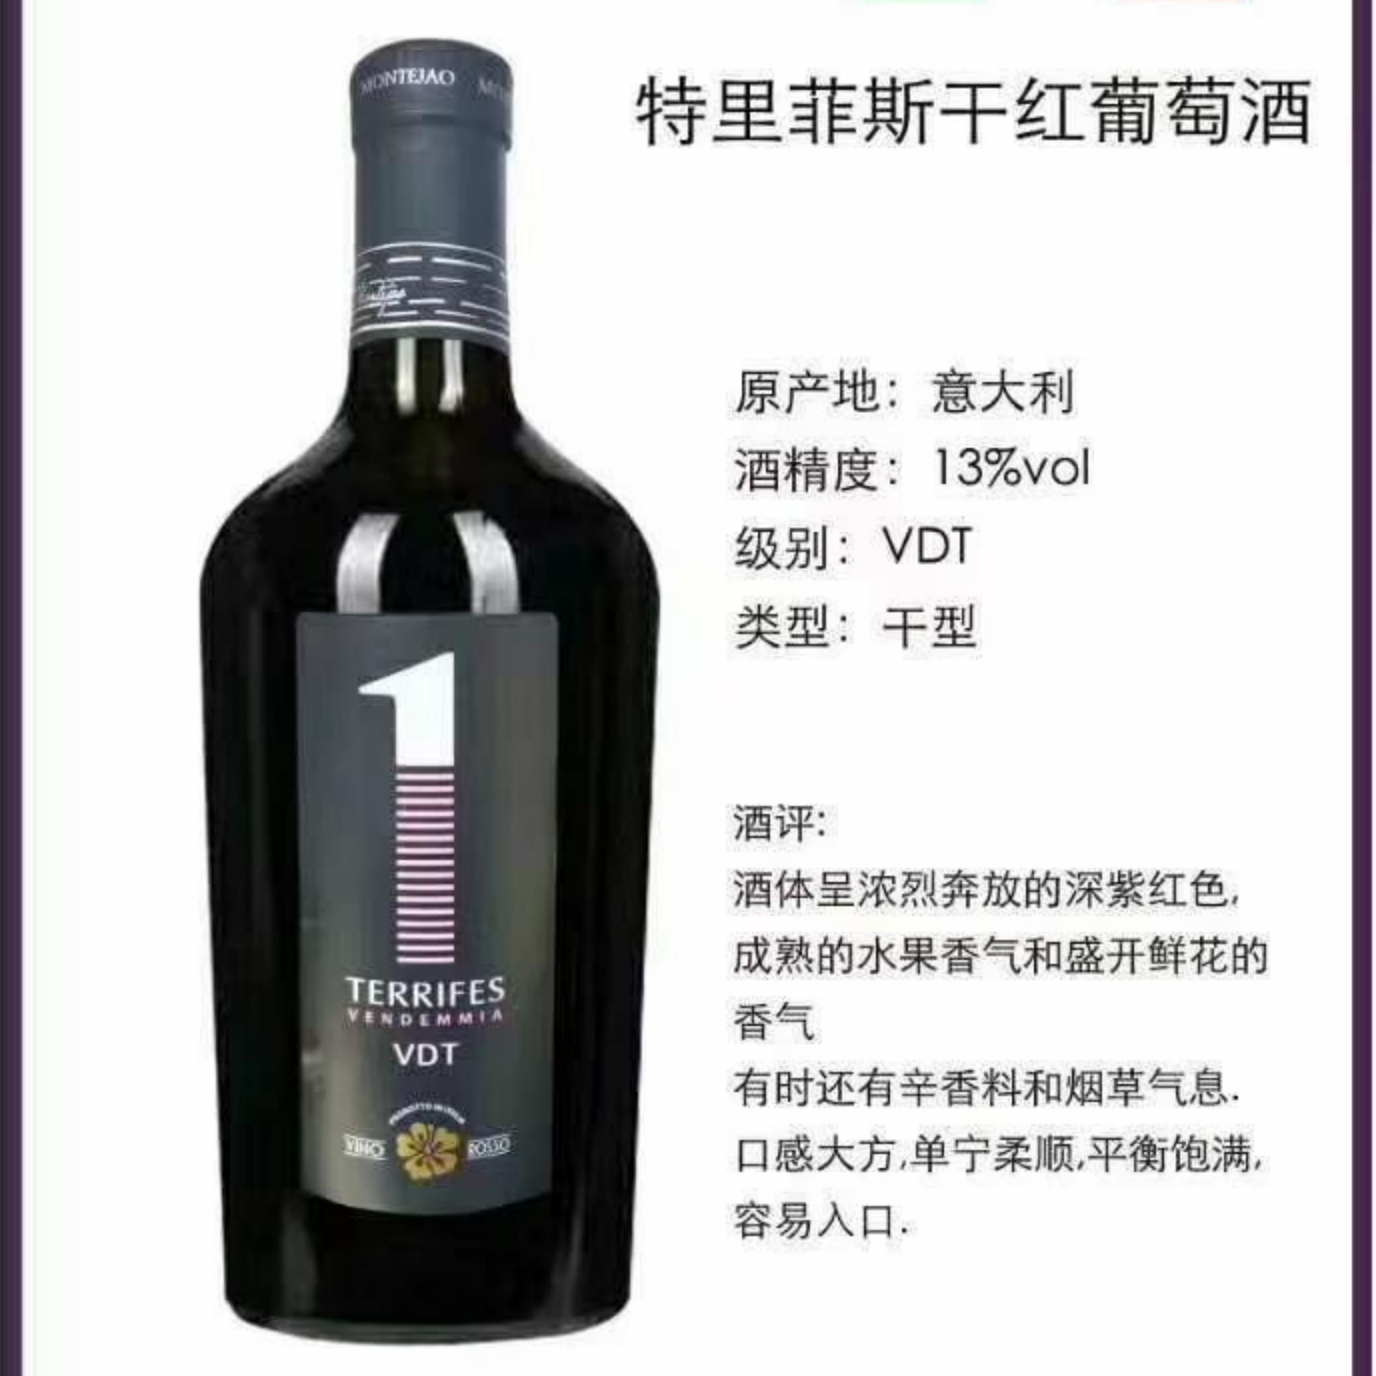 上海万耀意大利进口小胖瓶系列特里菲斯干红葡萄酒红酒VDT级别进口红酒价格